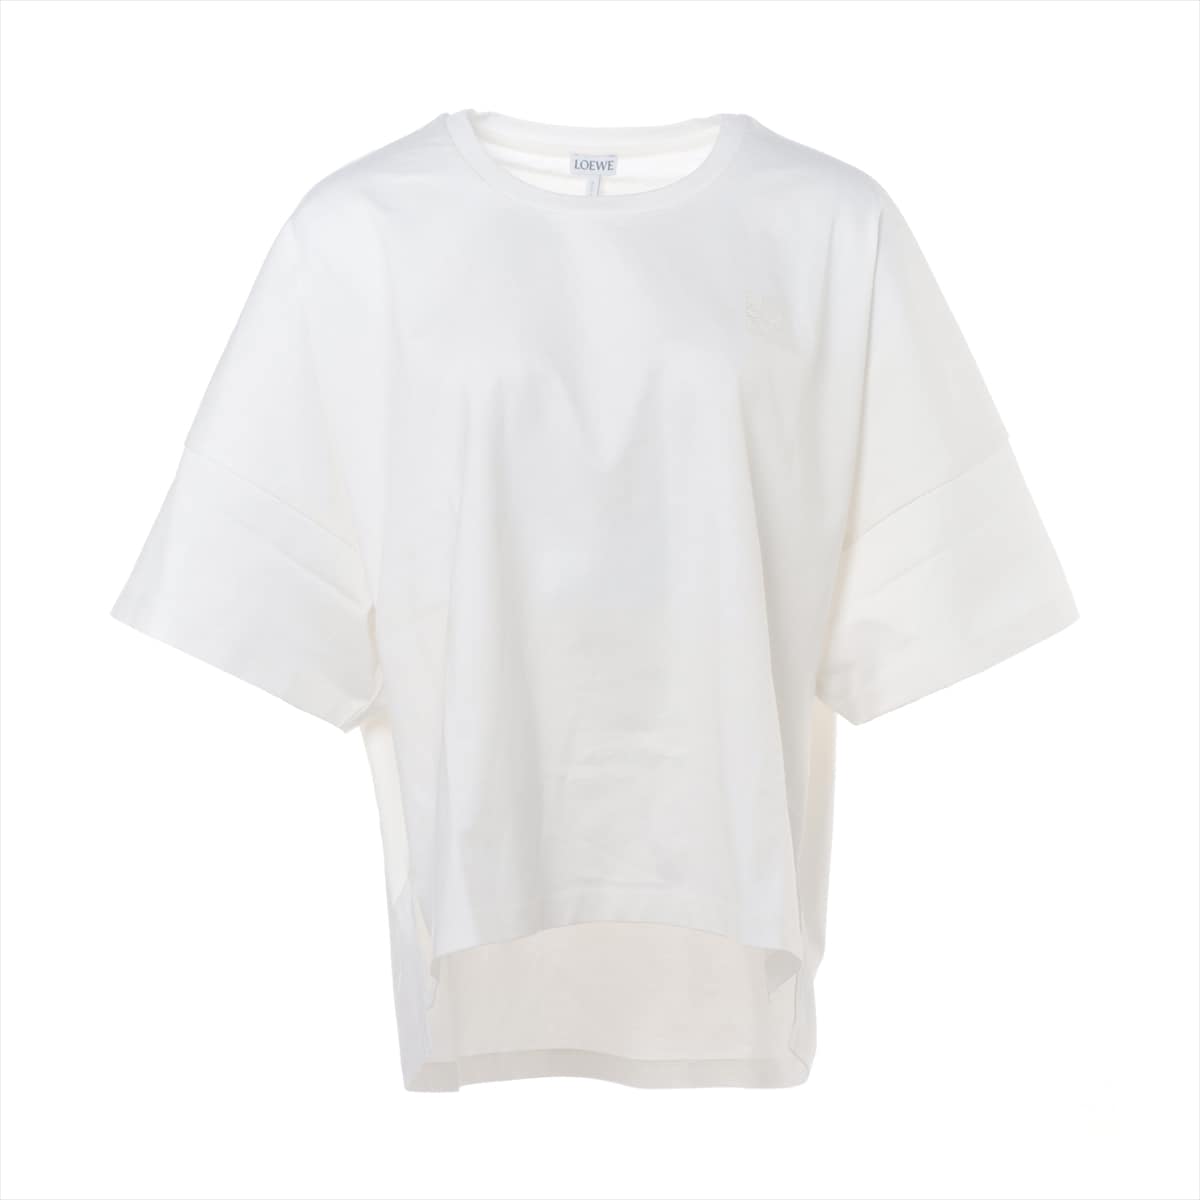 ロエベ アナグラム コットン Tシャツ M レディース ホワイト S359341XA4 オーバーサイズ